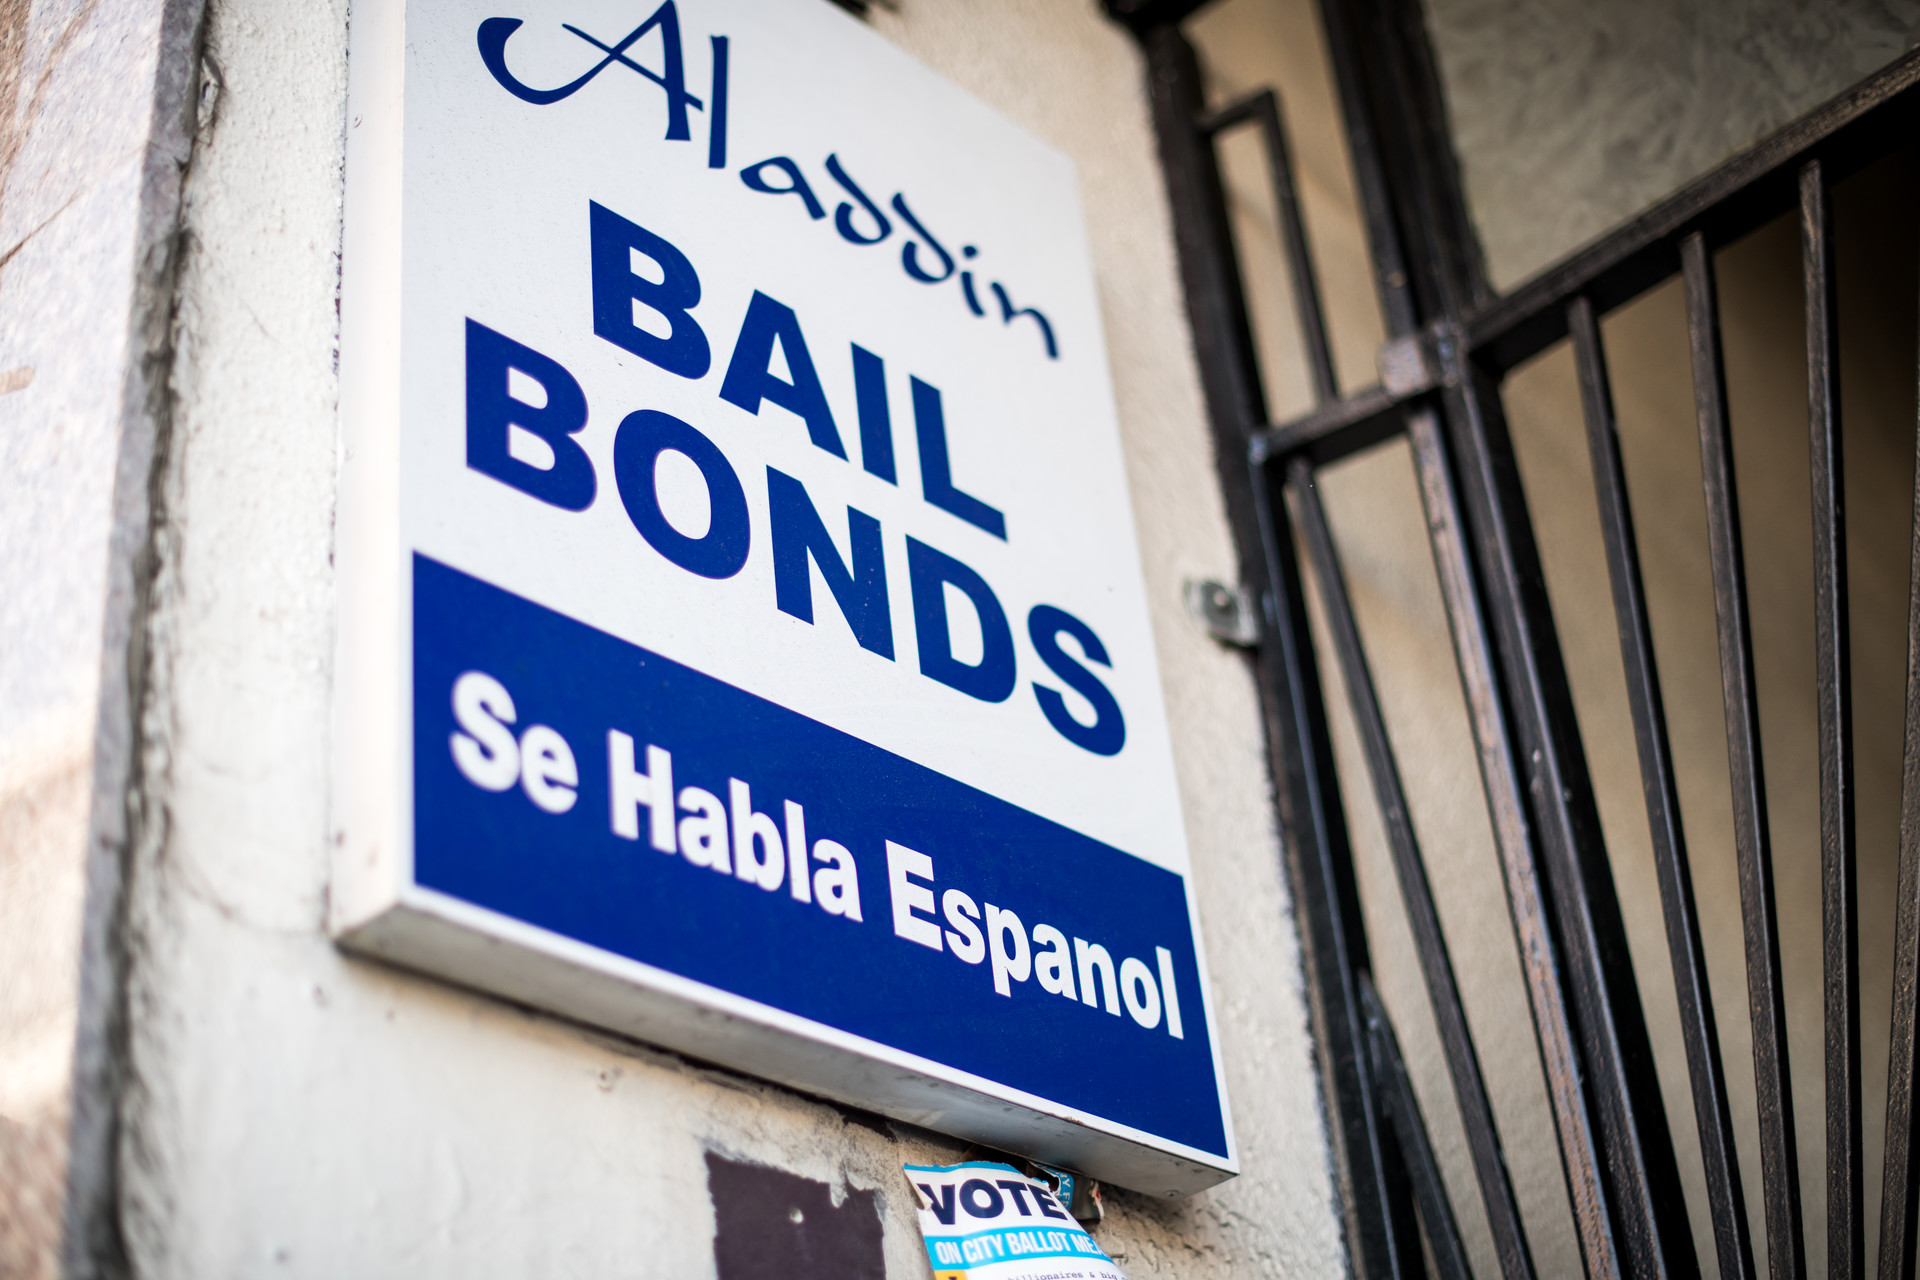 A1 Bail Bonds